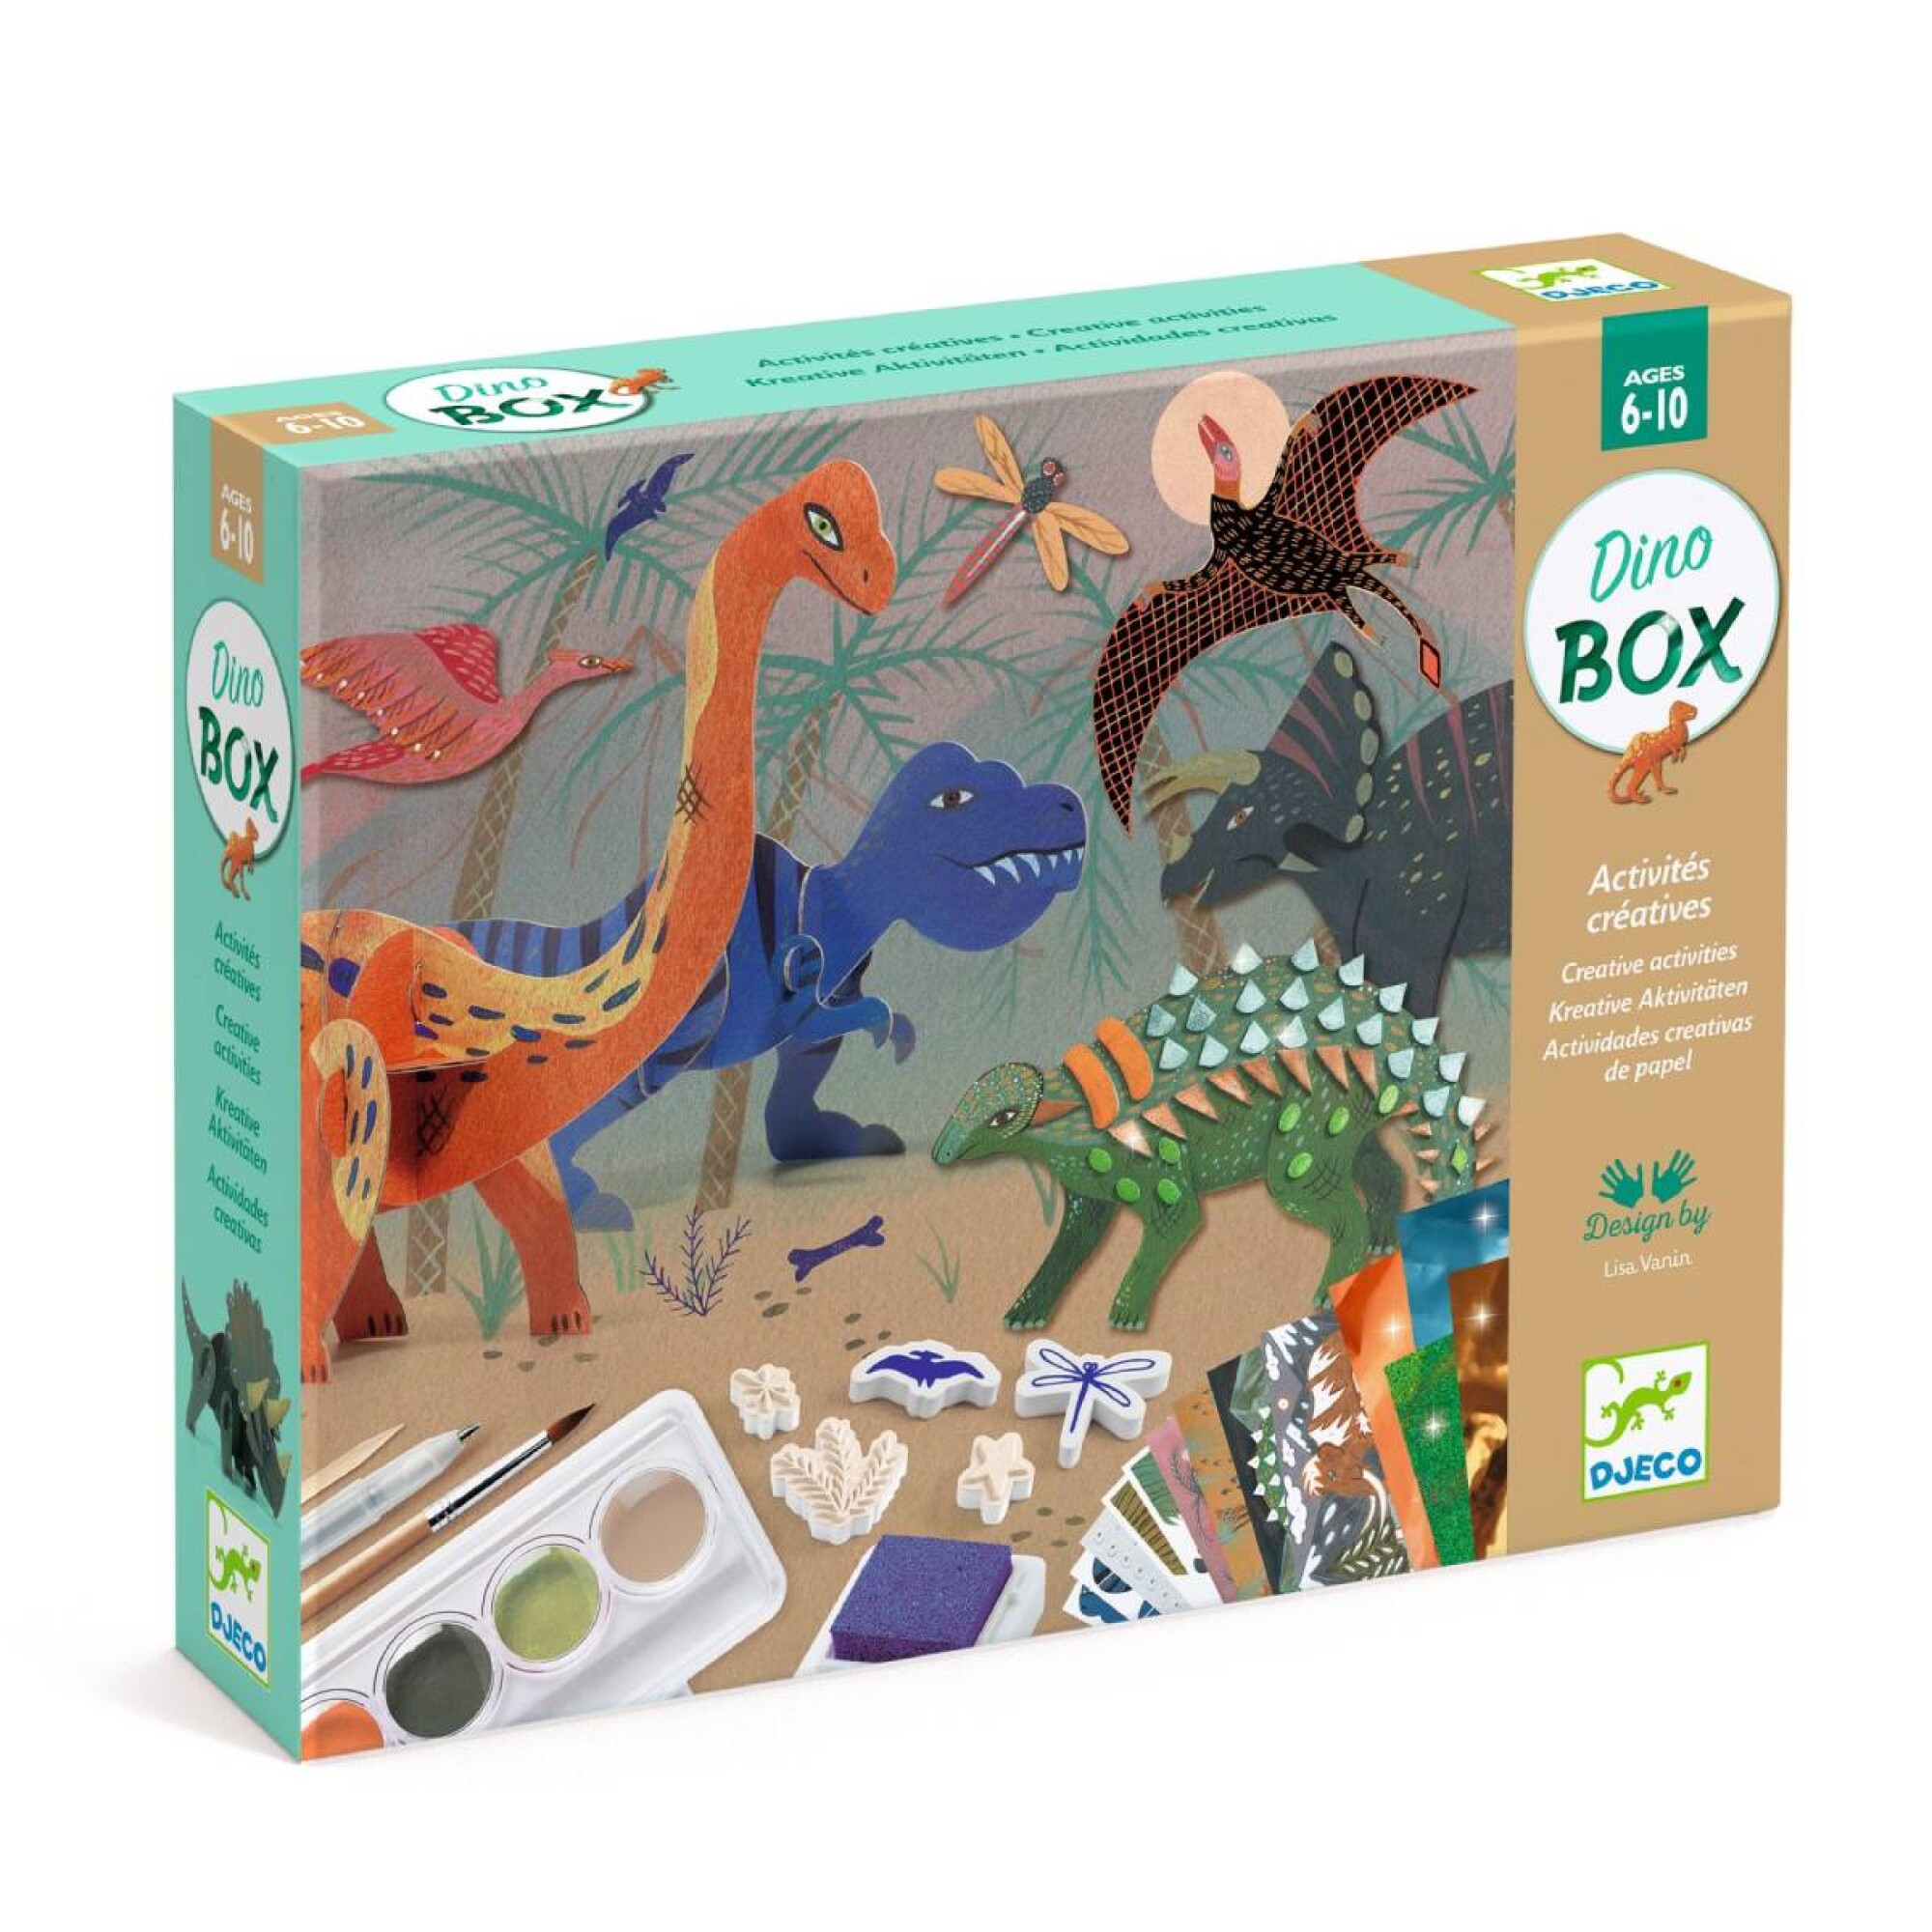 Dino Box Djeco — Los Reyes Magos